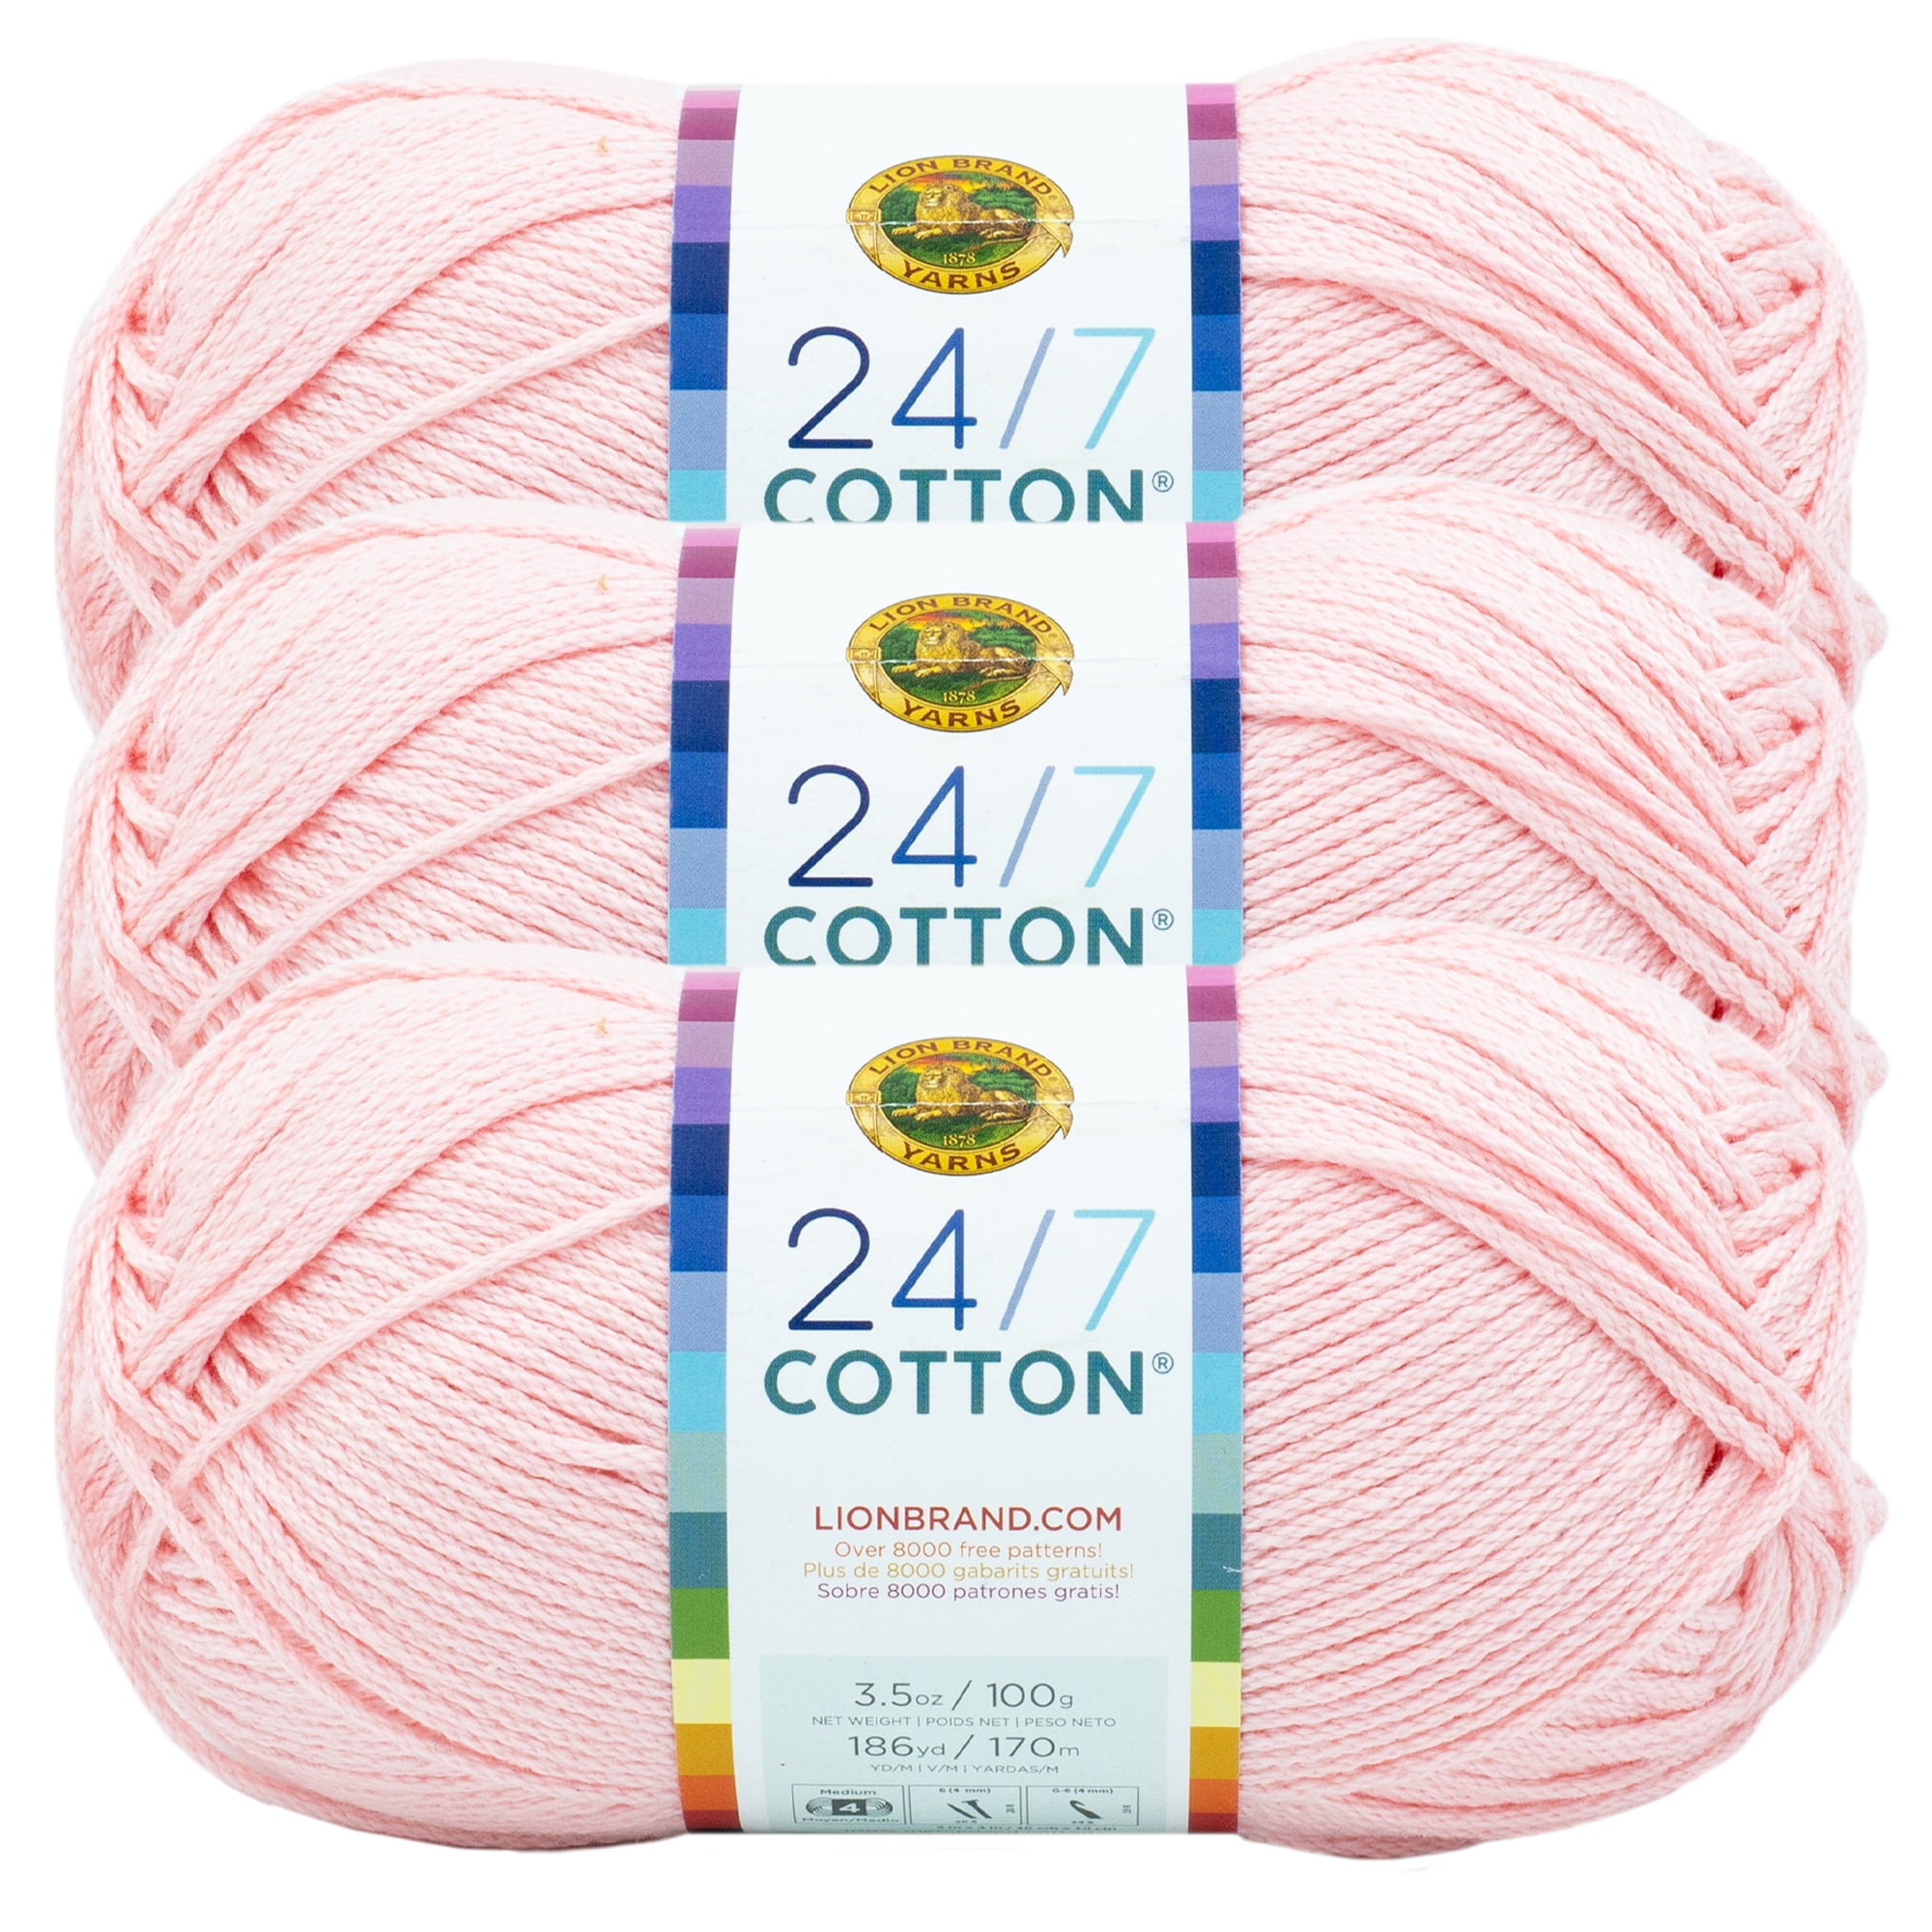  Lion Brand 24/7 Cotton Yarn Pink 761-101 (6-Skein